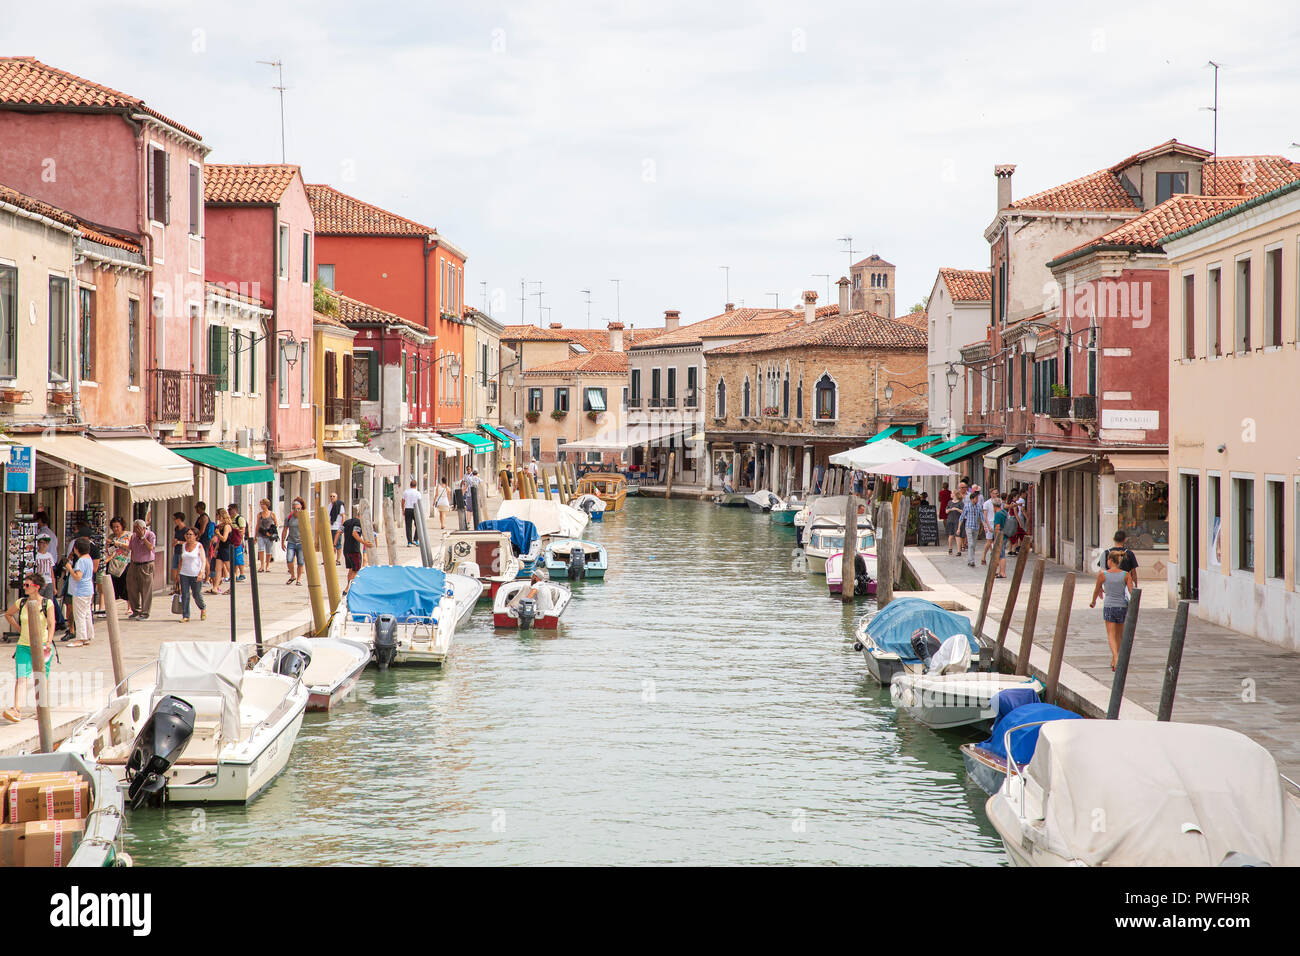 Fondamenta dei Vetrai, une des rues principales sur l'île de Murano, Venise, Italie. Banque D'Images